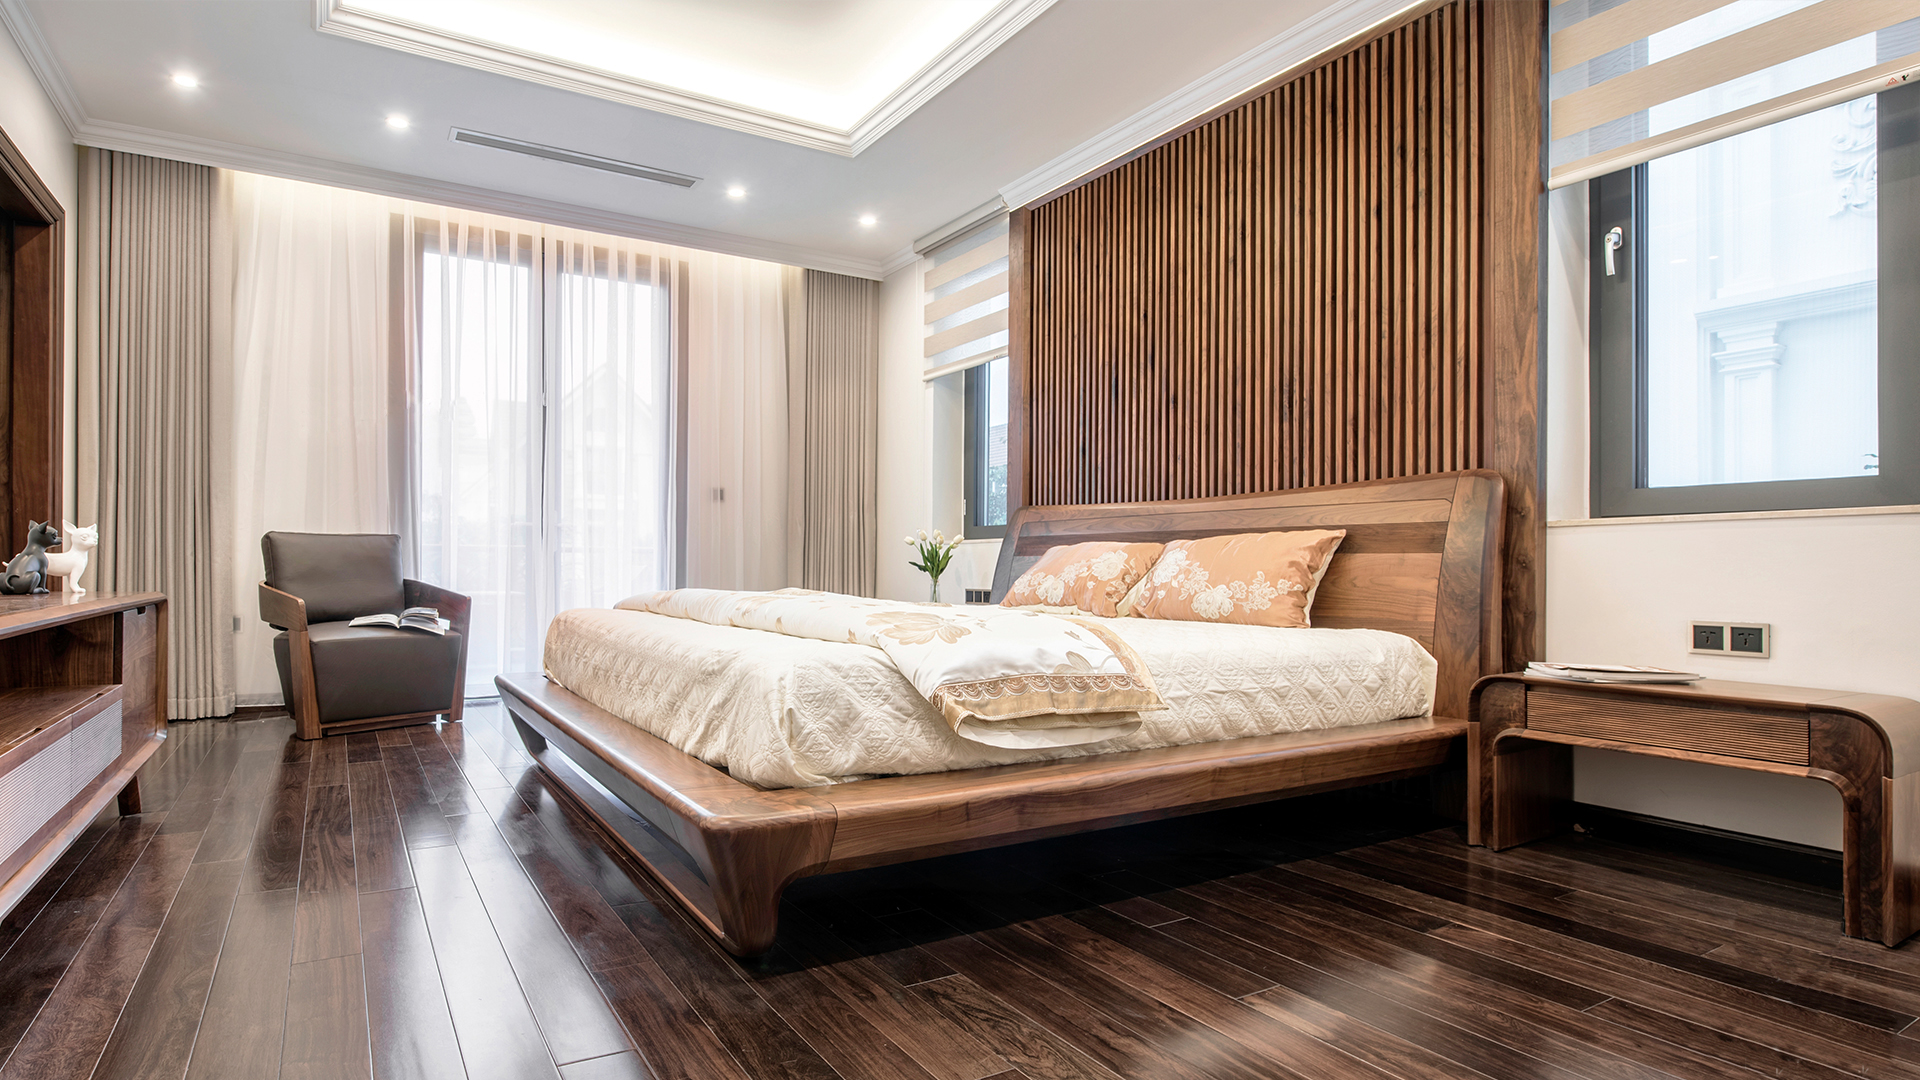 Mẫu giường ngủ gỗ óc chó hiện đại với thiết kế bo viền mềm mại